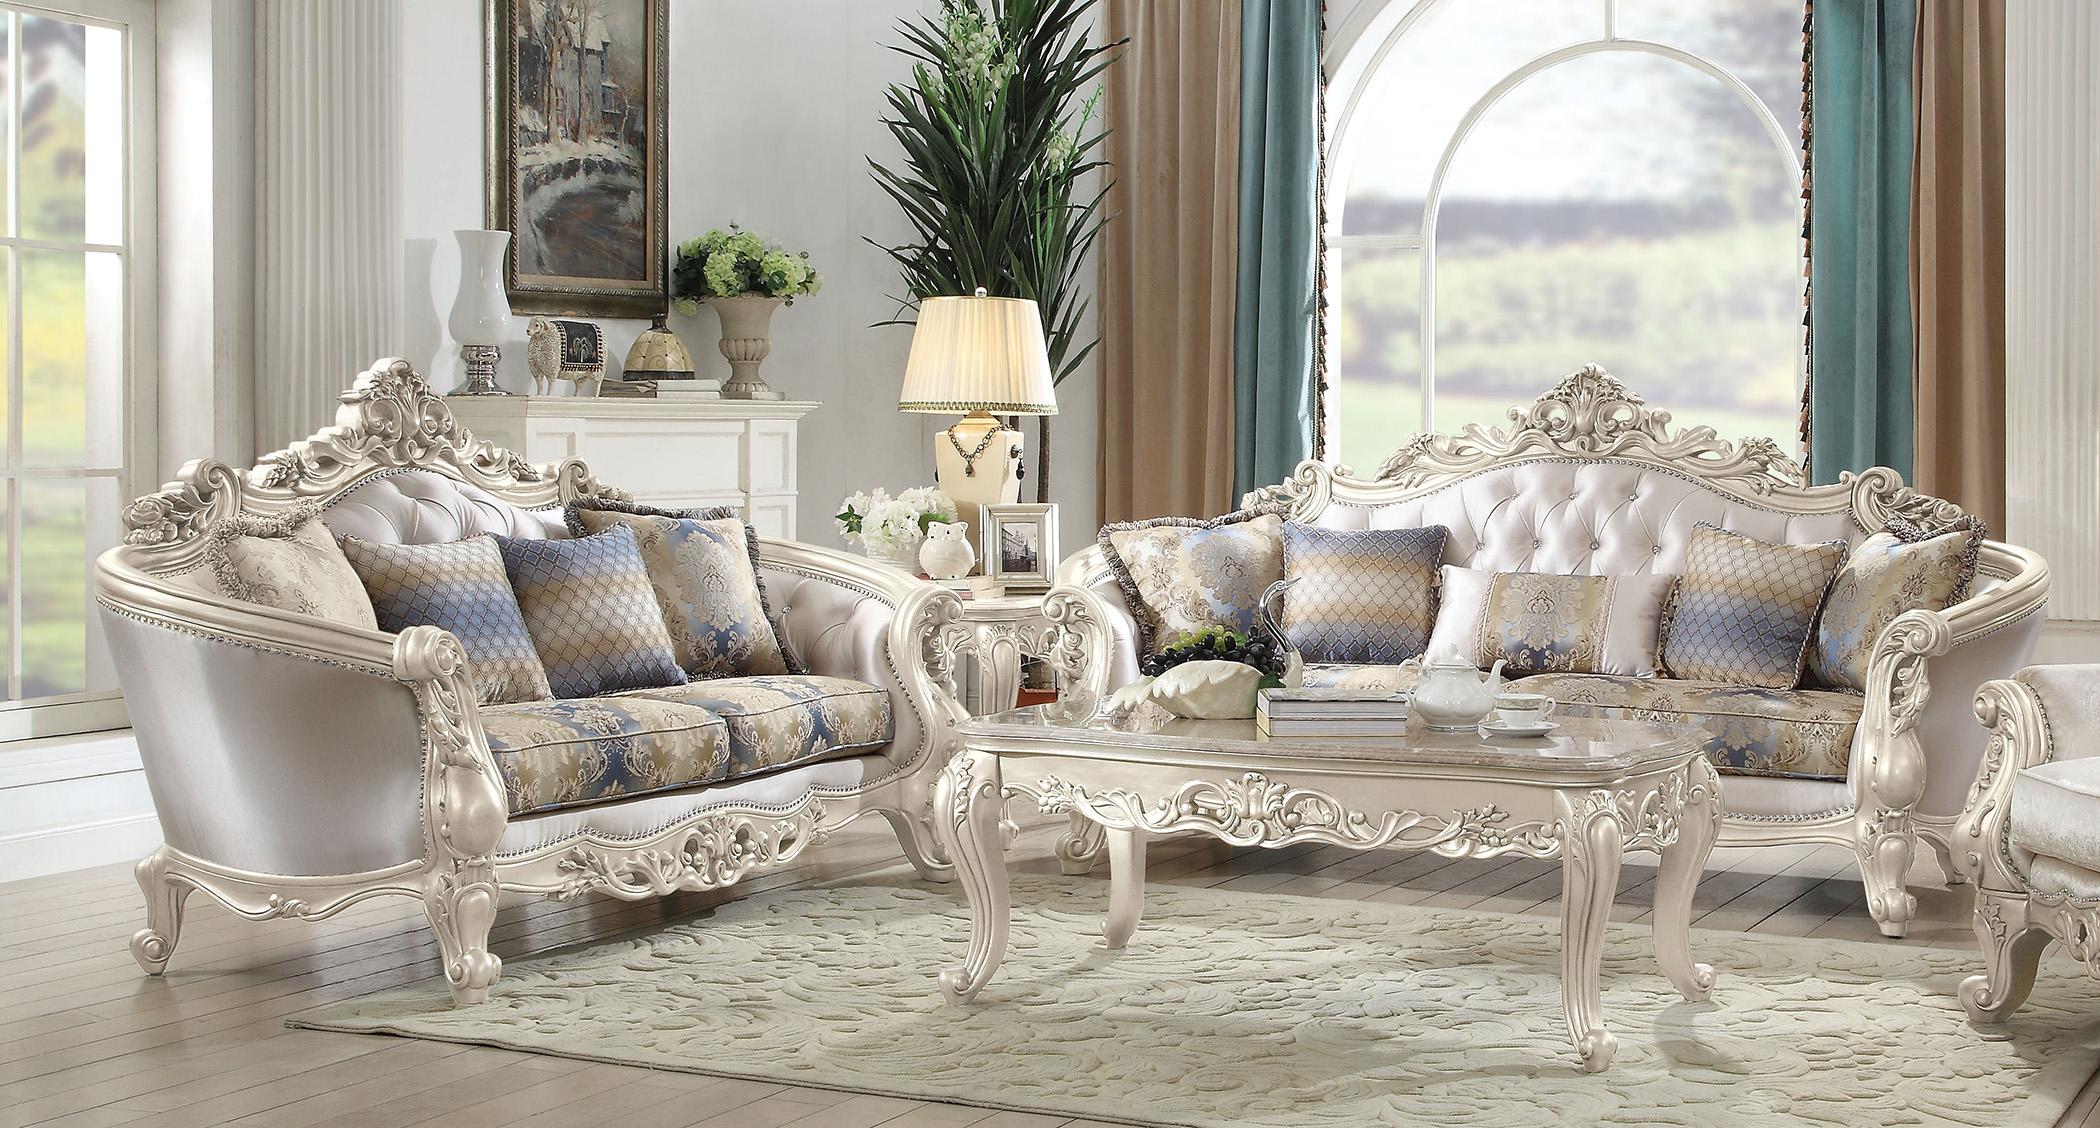 

    
Luxury Sofa Set 2 Pcs Gorsedd-52440 Antique White Cream Fabric Acme Traditional
